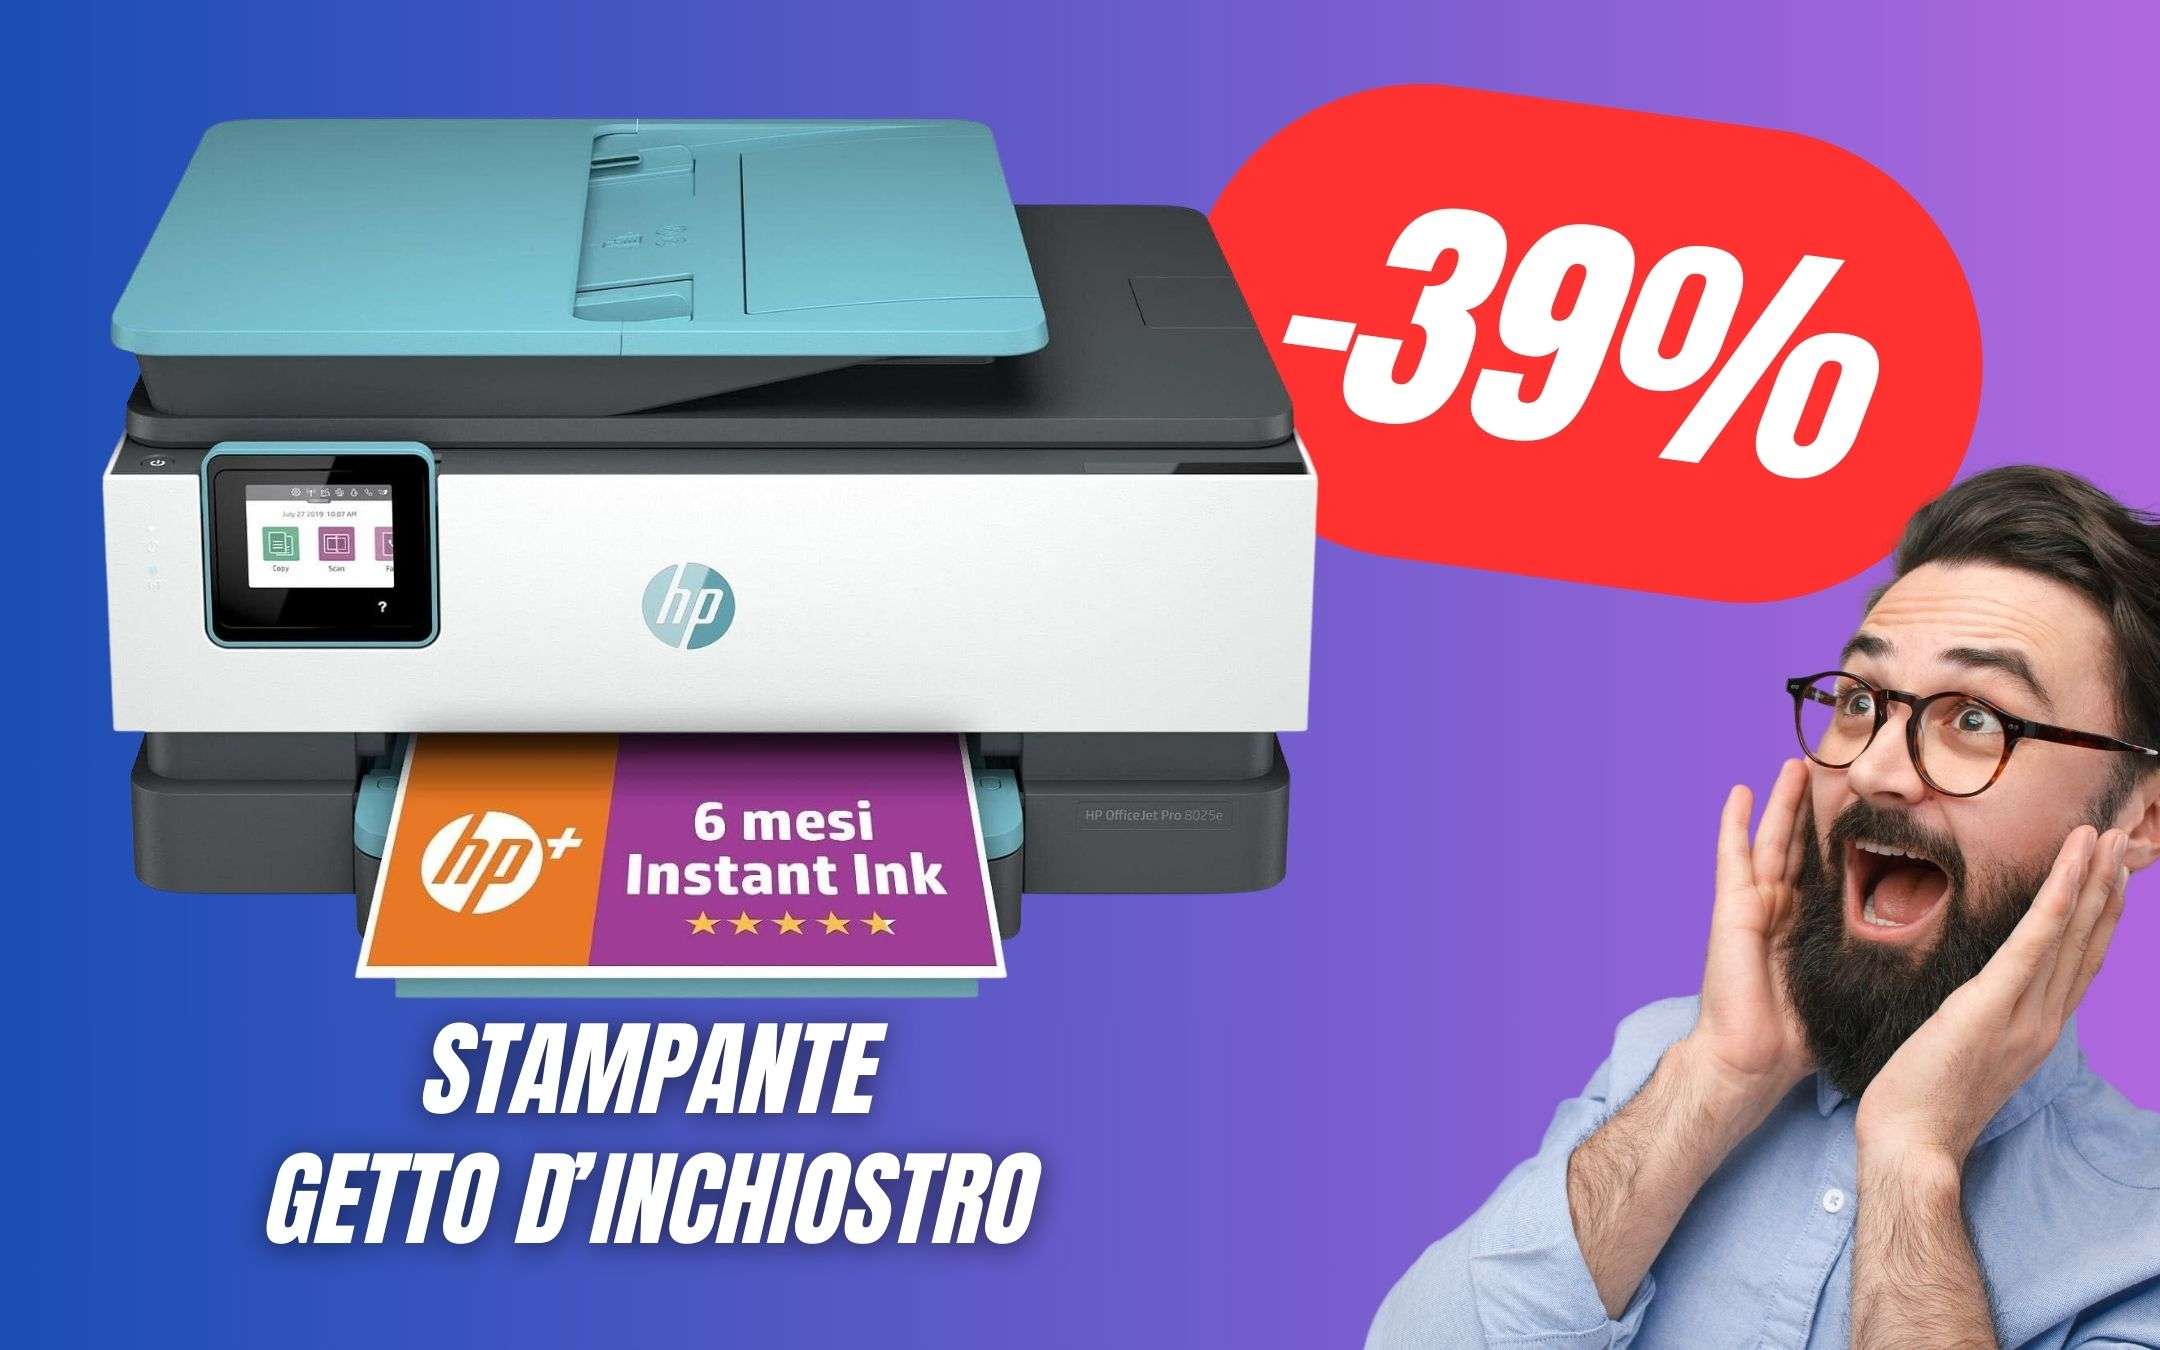 Questa Stampante HP a Getto d'Inchiostro è un AFFARE a questo prezzo! (-39%)